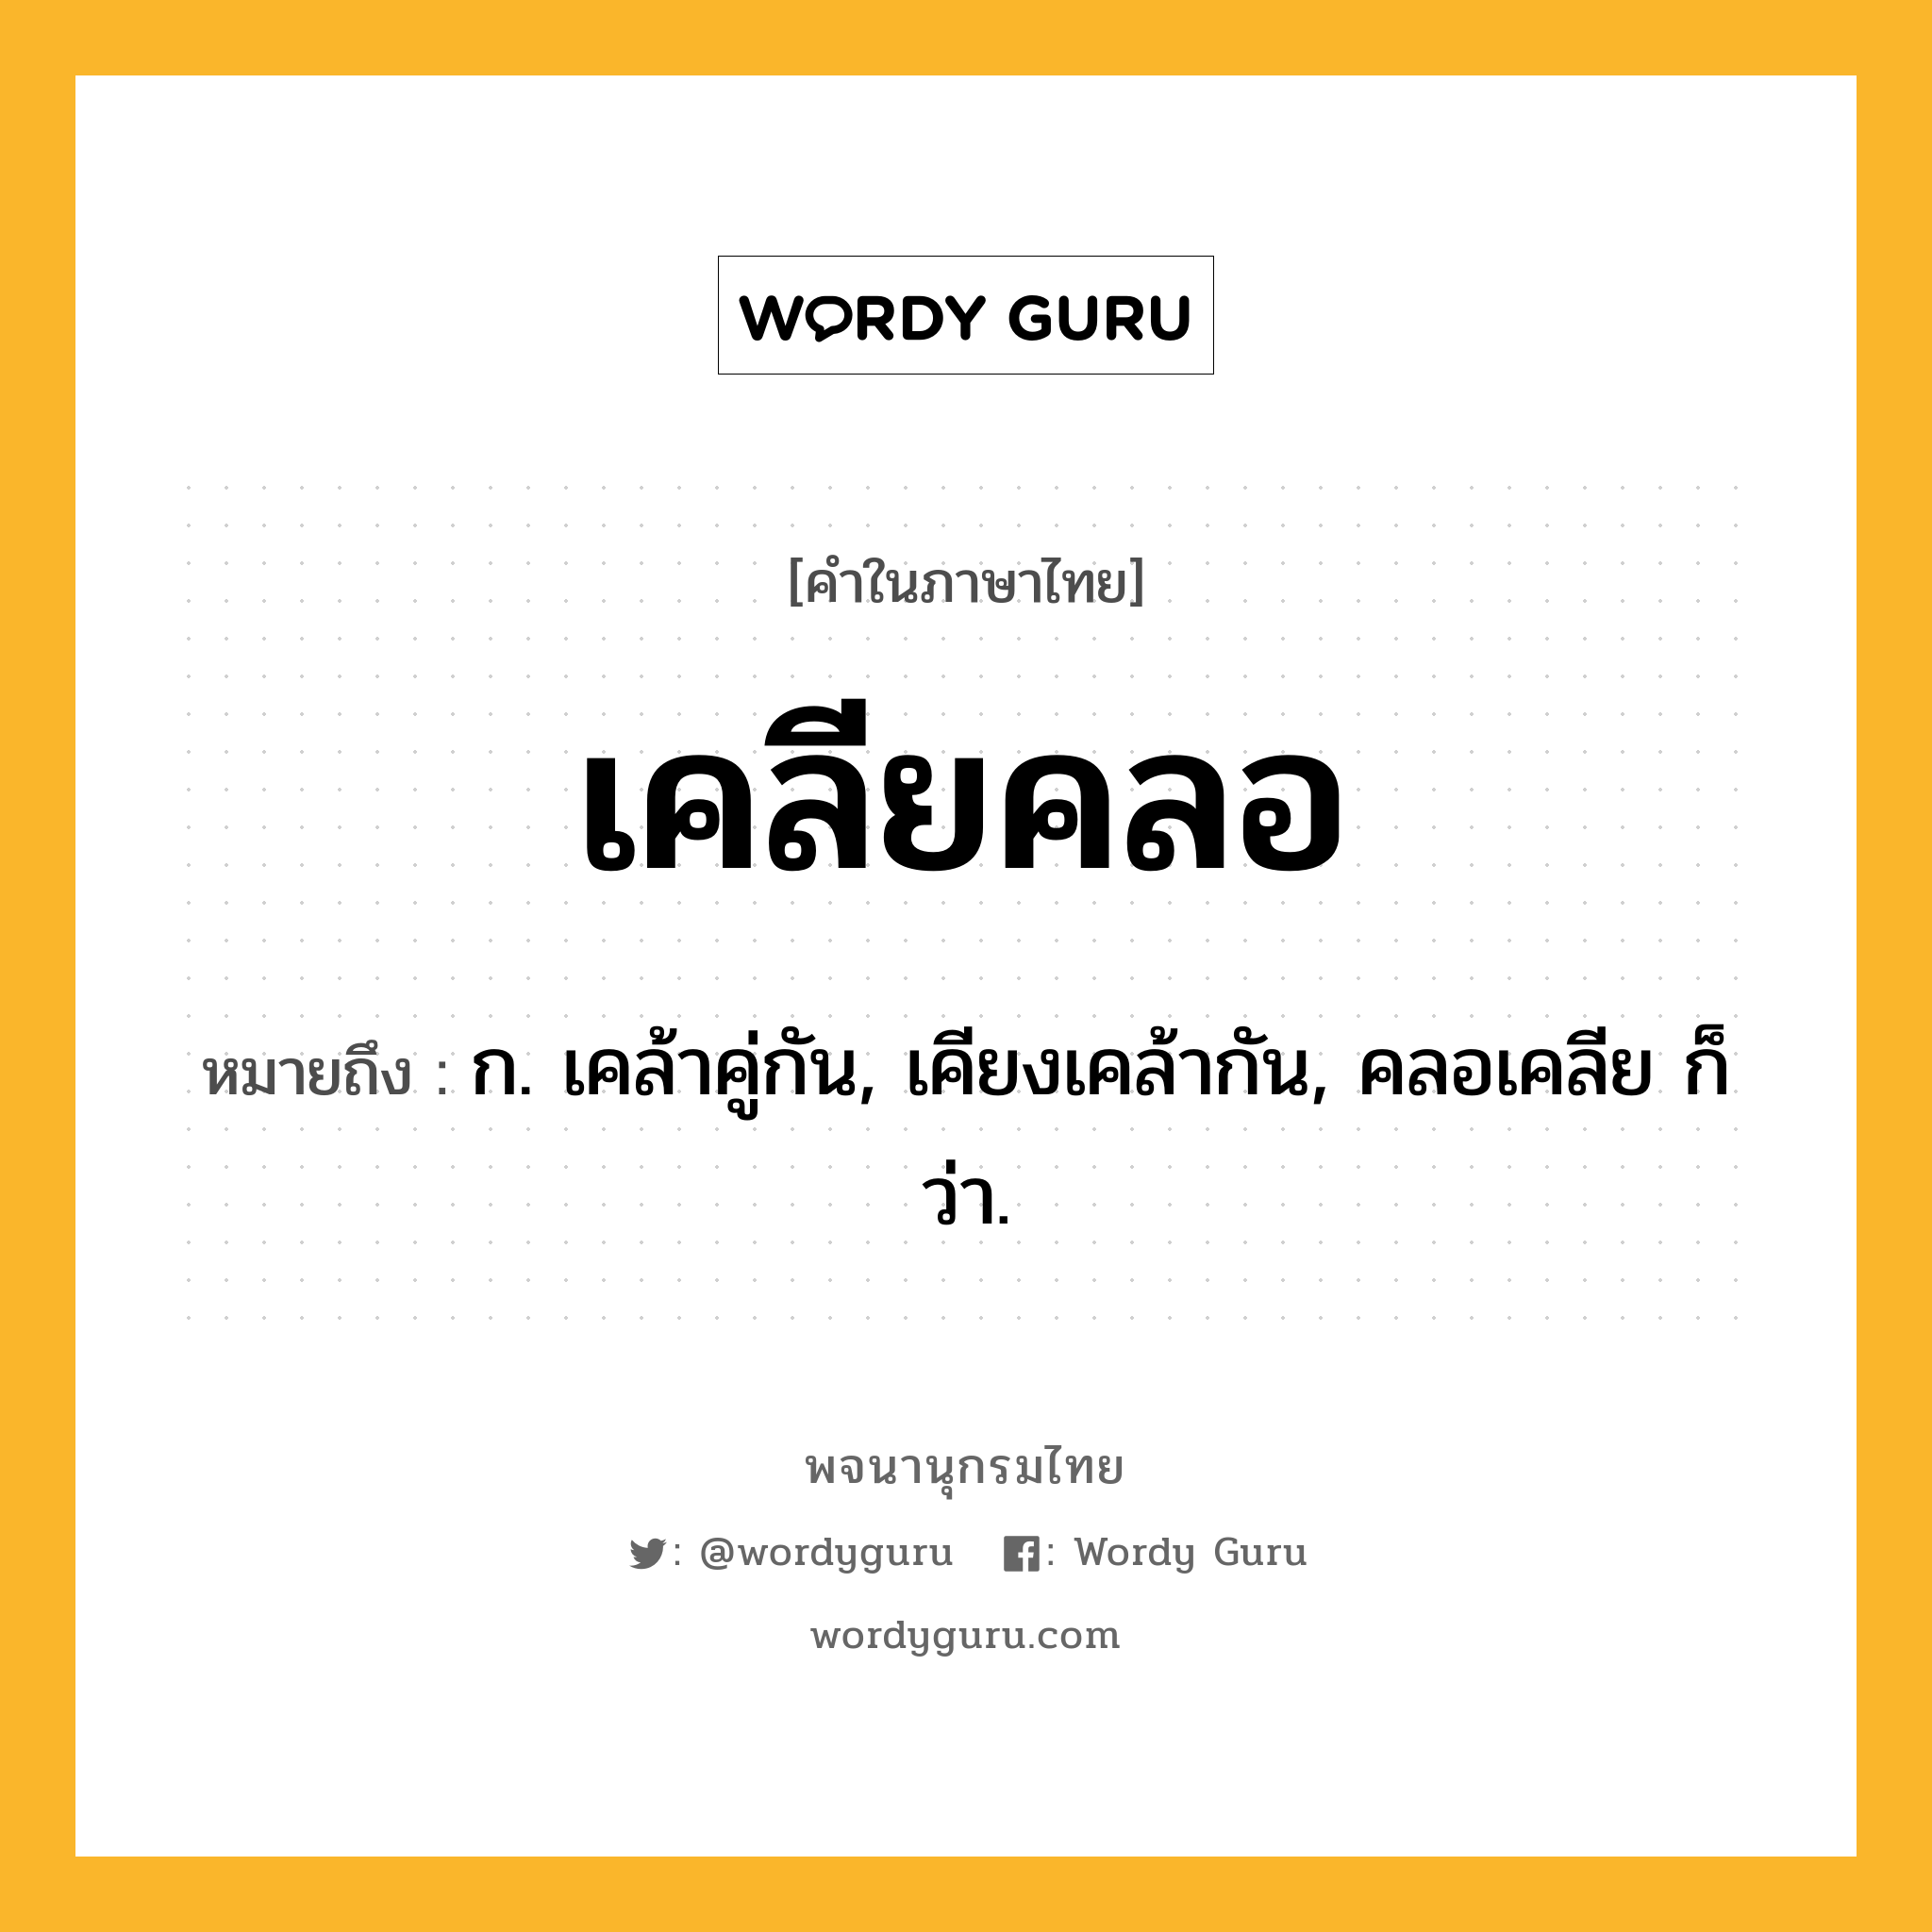 เคลียคลอ ความหมาย หมายถึงอะไร?, คำในภาษาไทย เคลียคลอ หมายถึง ก. เคล้าคู่กัน, เคียงเคล้ากัน, คลอเคลีย ก็ว่า.